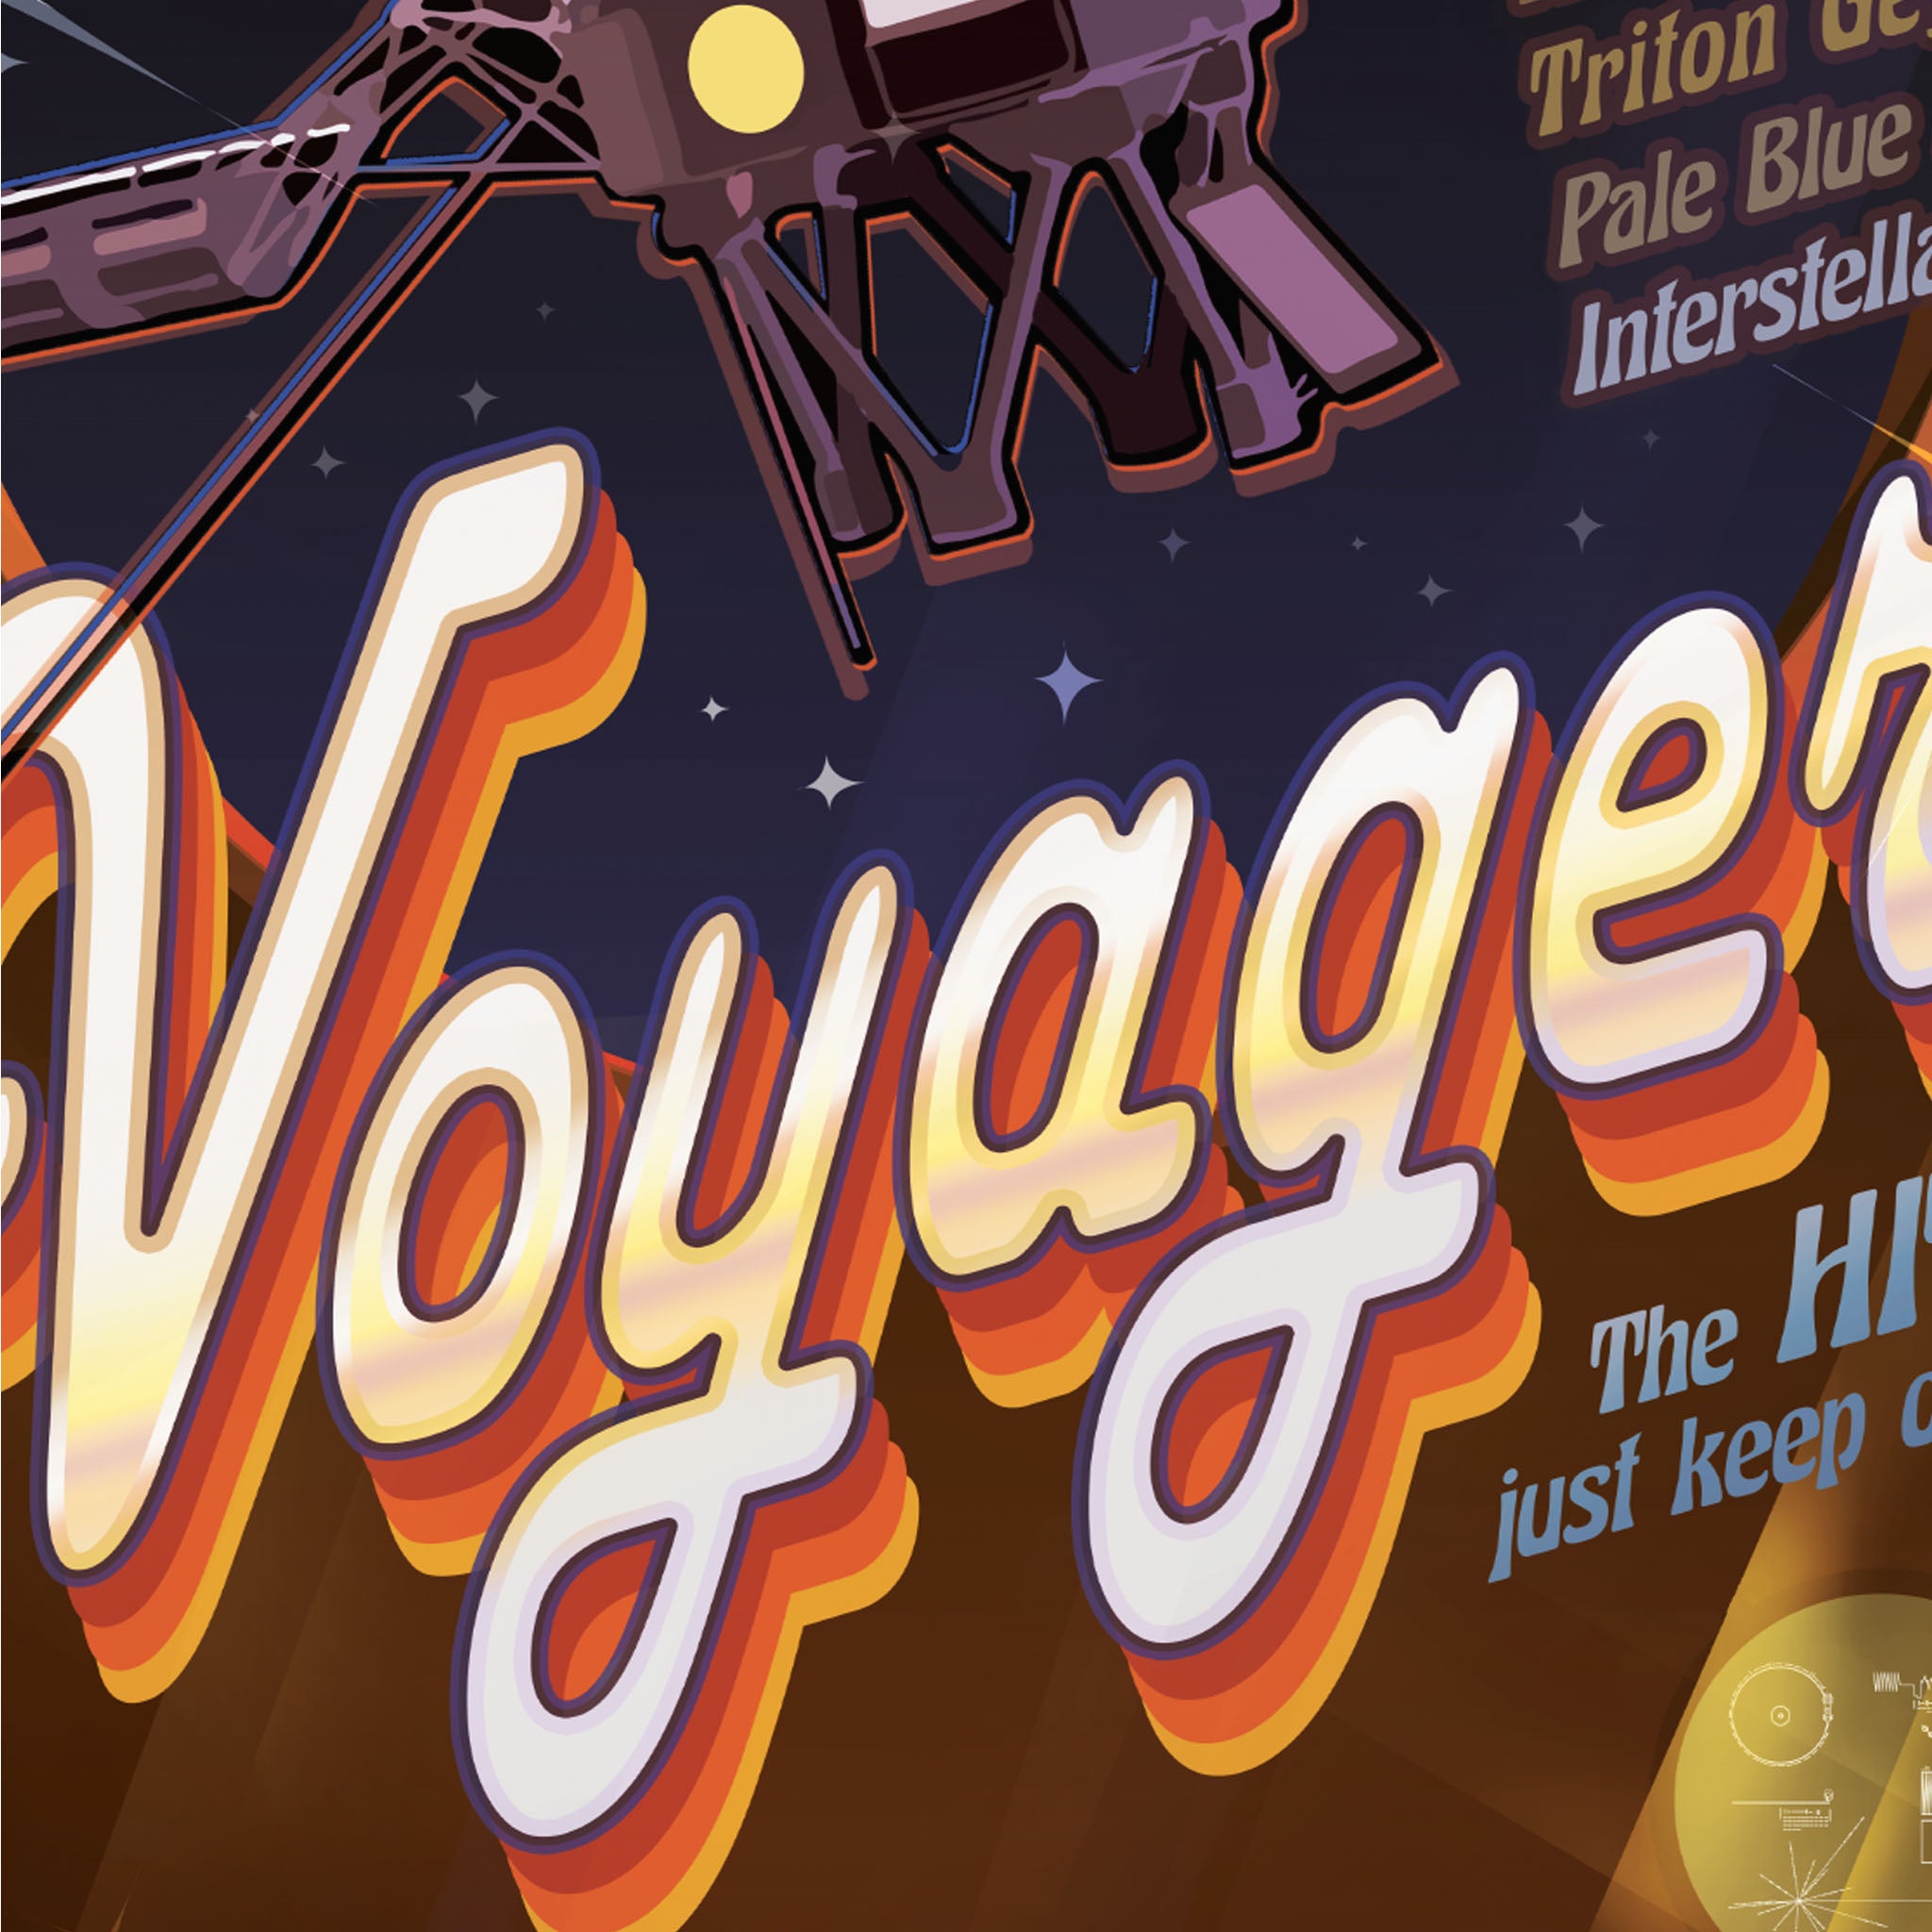 Voyager  - NASA Poster